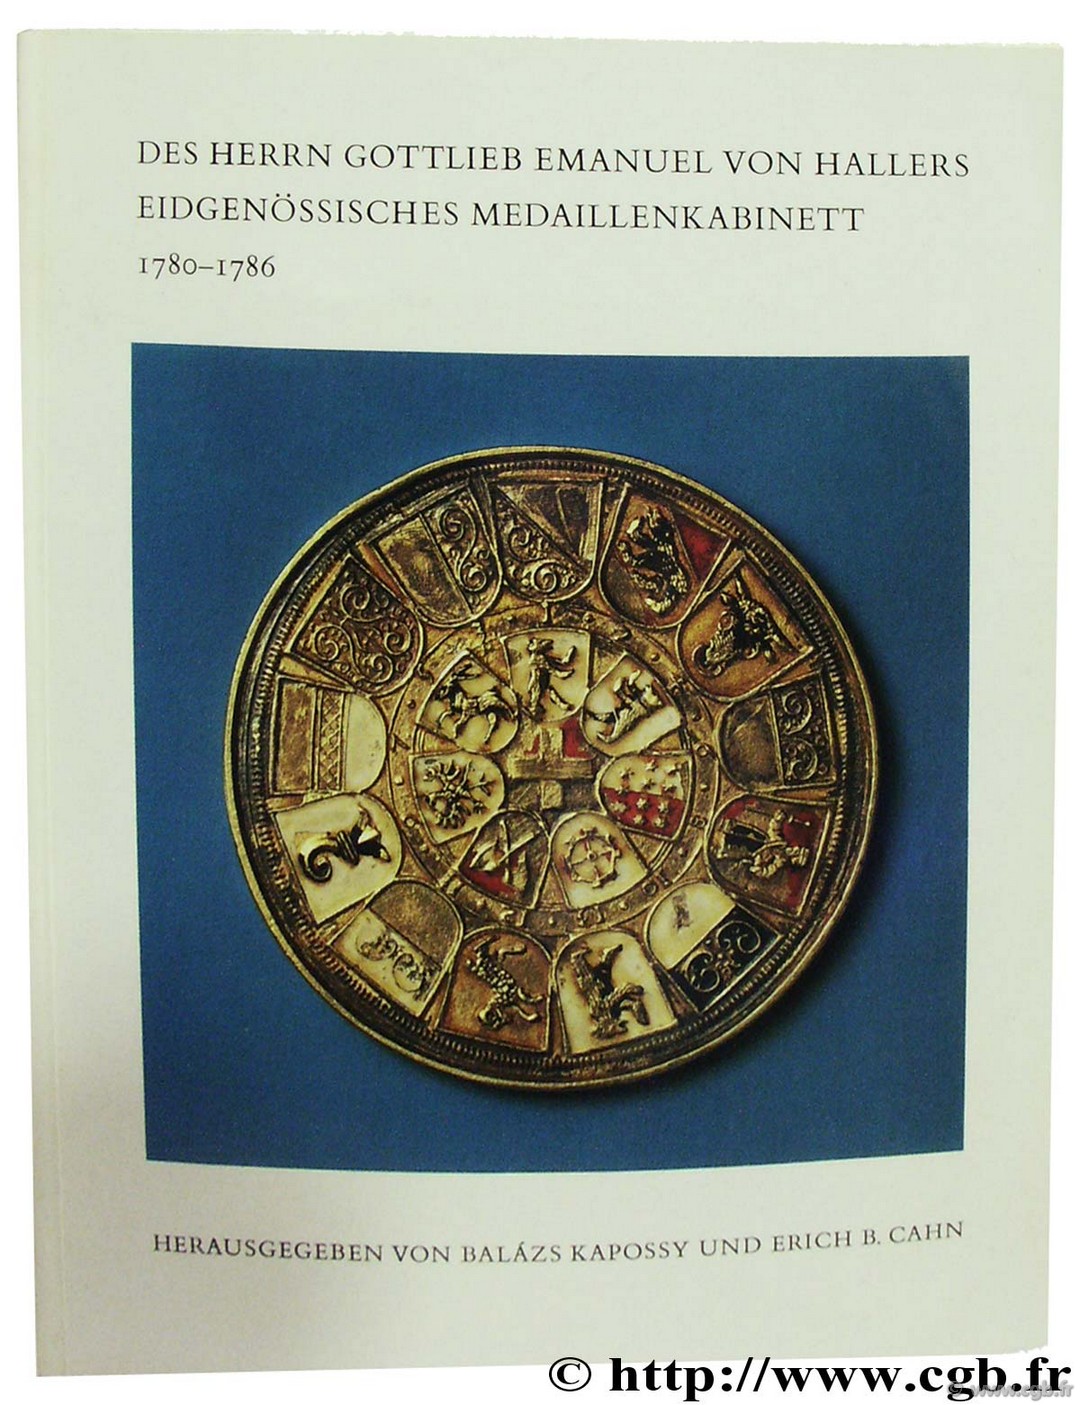 Des Herrn Gottlieb Emanuel von Hallers Eidgeössisches Medaillenkabinett 1780-1786 CAHN E.-B., KAPOSSY B.